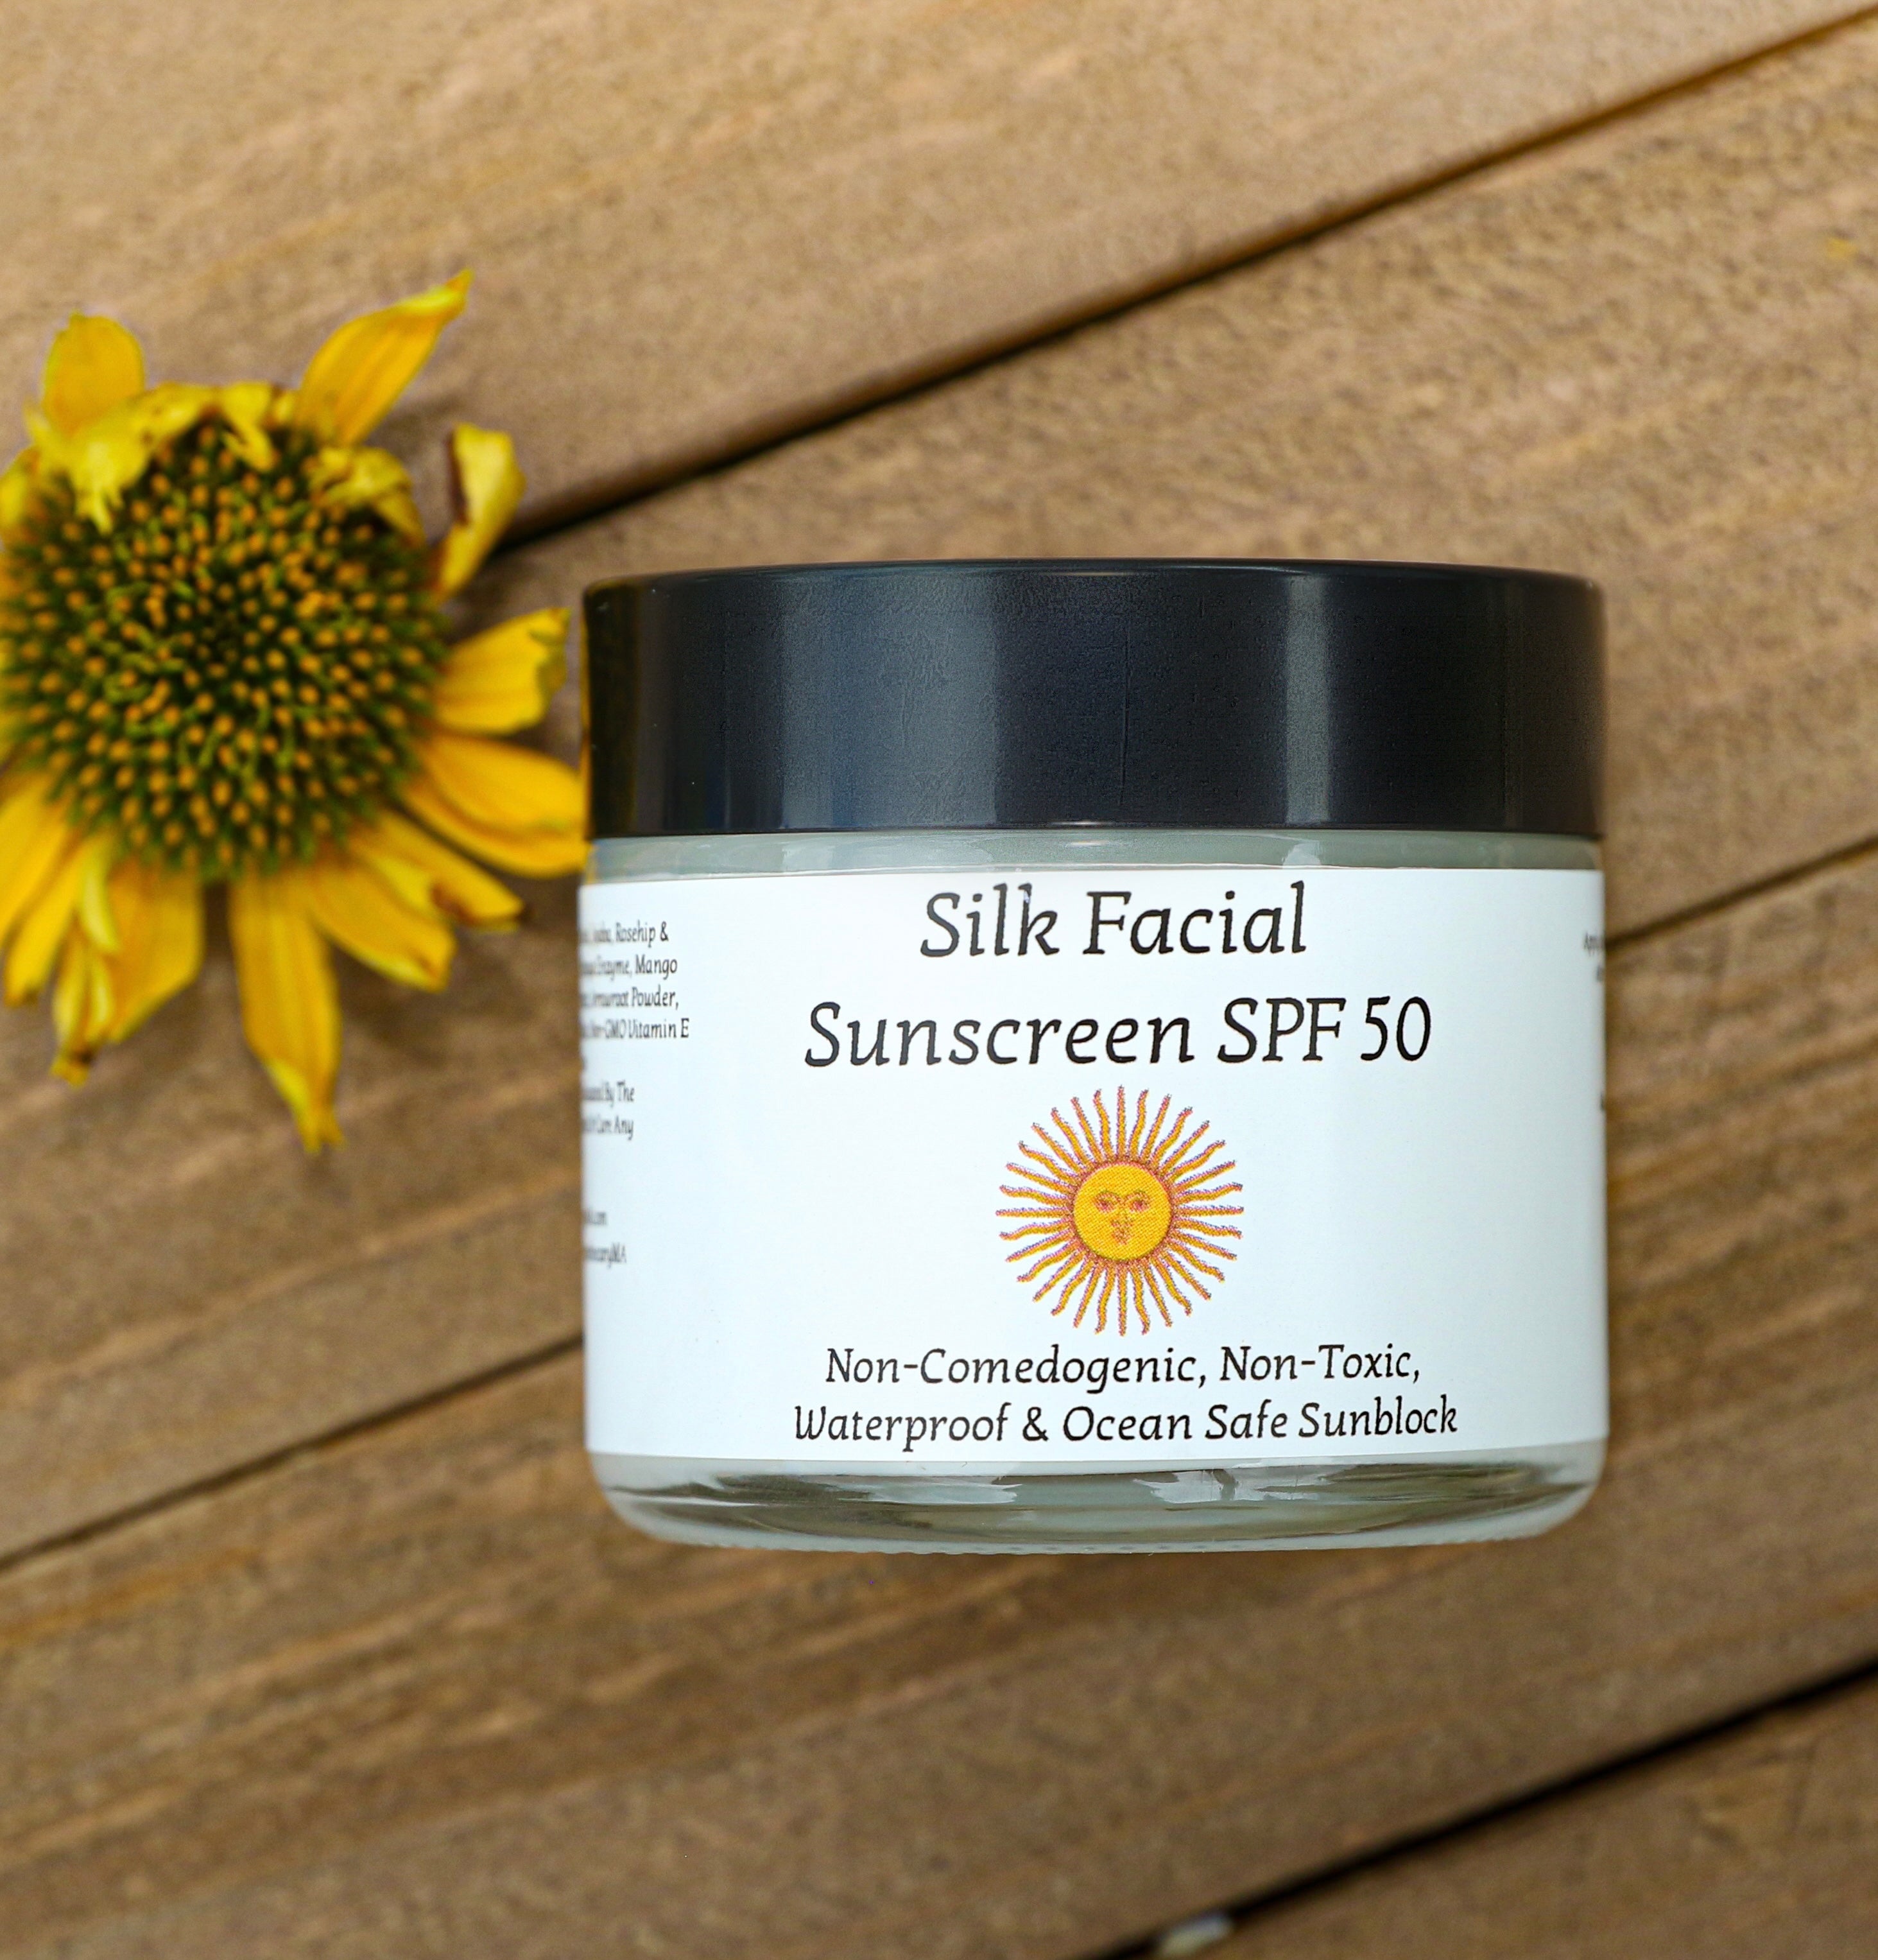 Silk Facial Sunscreen SPF 50